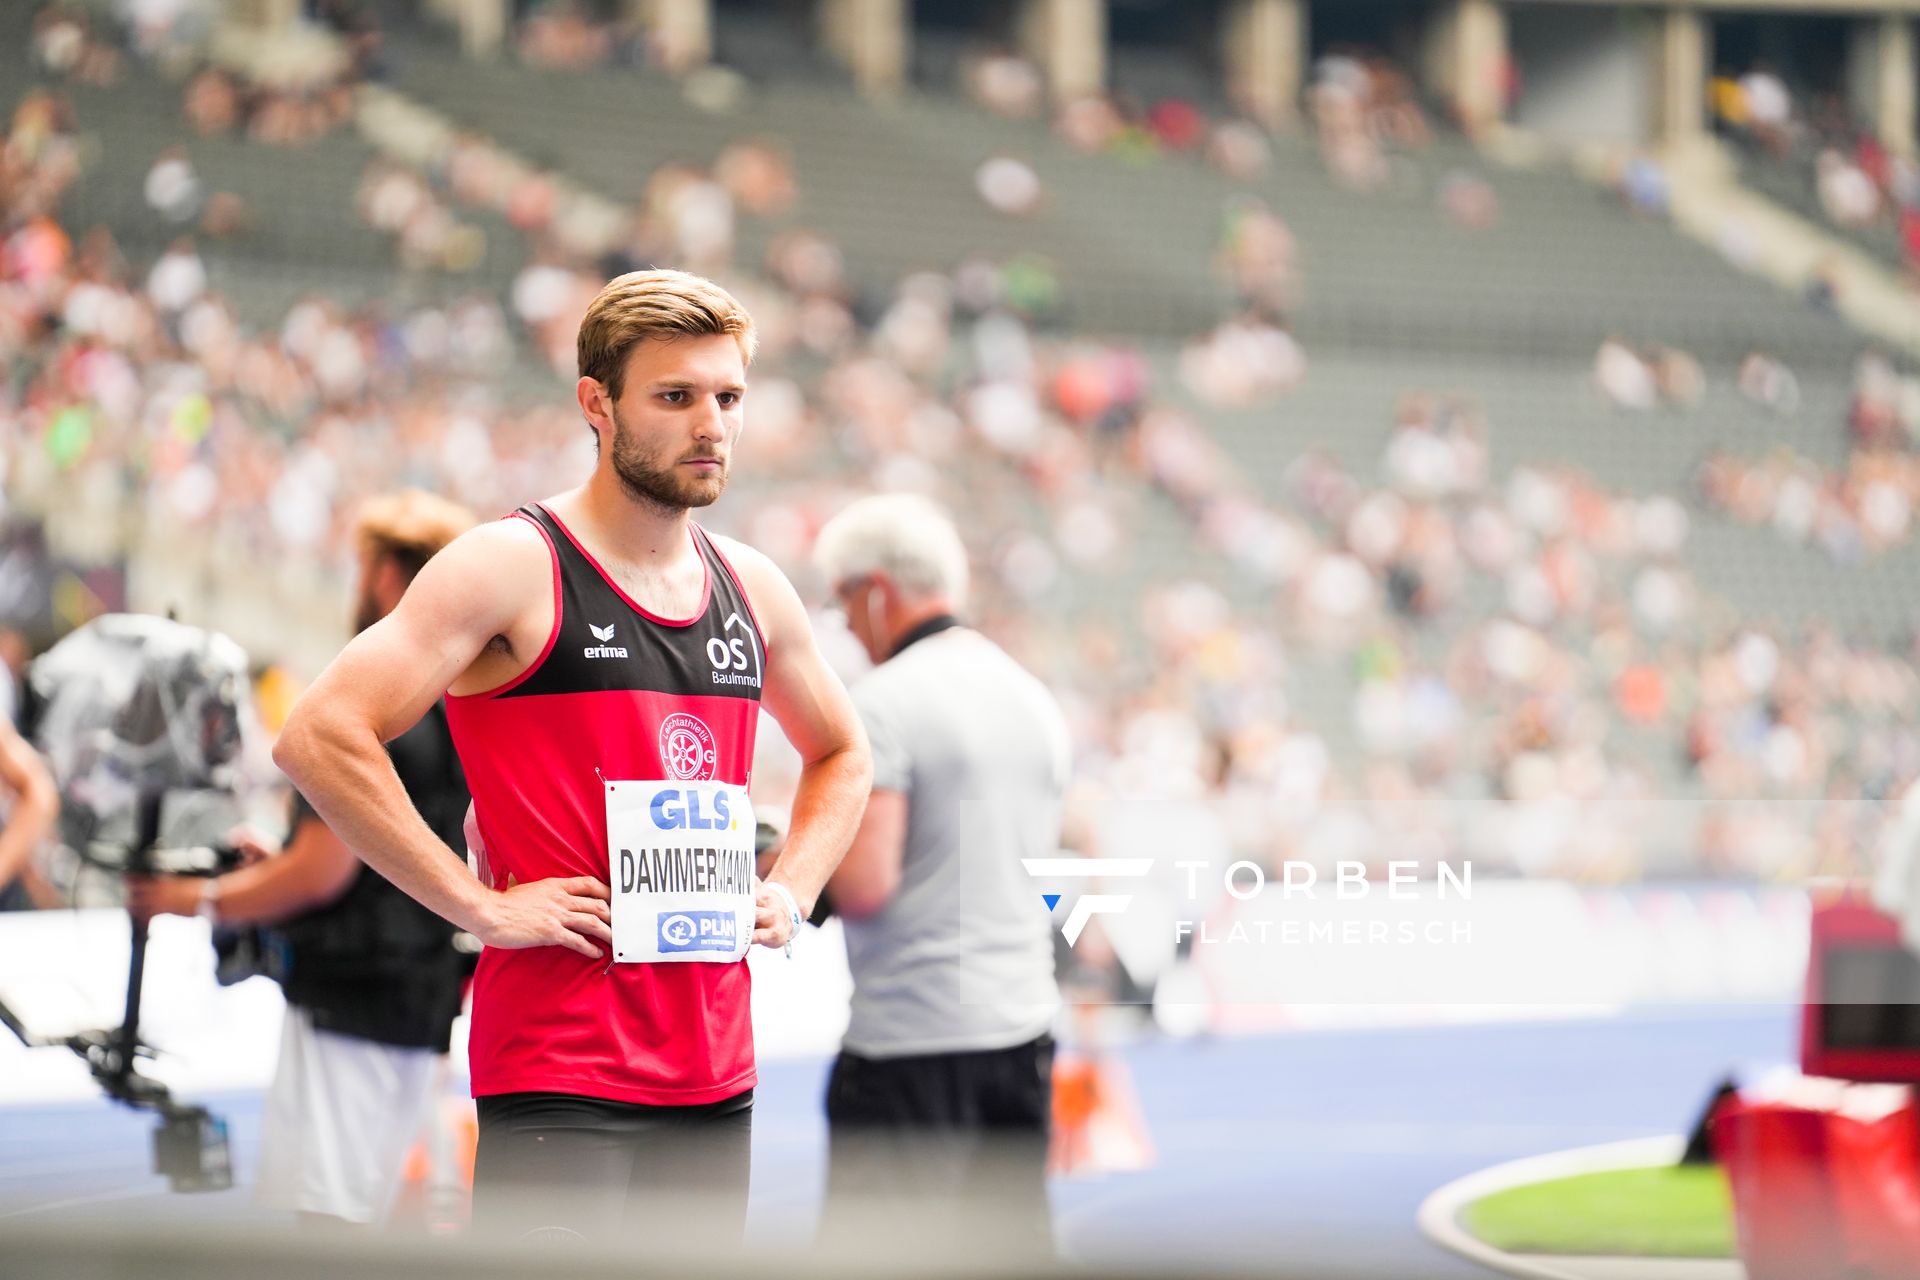 Fabian Dammermann (LG Osnabrueck) vor dem 400m Start waehrend der deutschen Leichtathletik-Meisterschaften im Olympiastadion am 25.06.2022 in Berlin